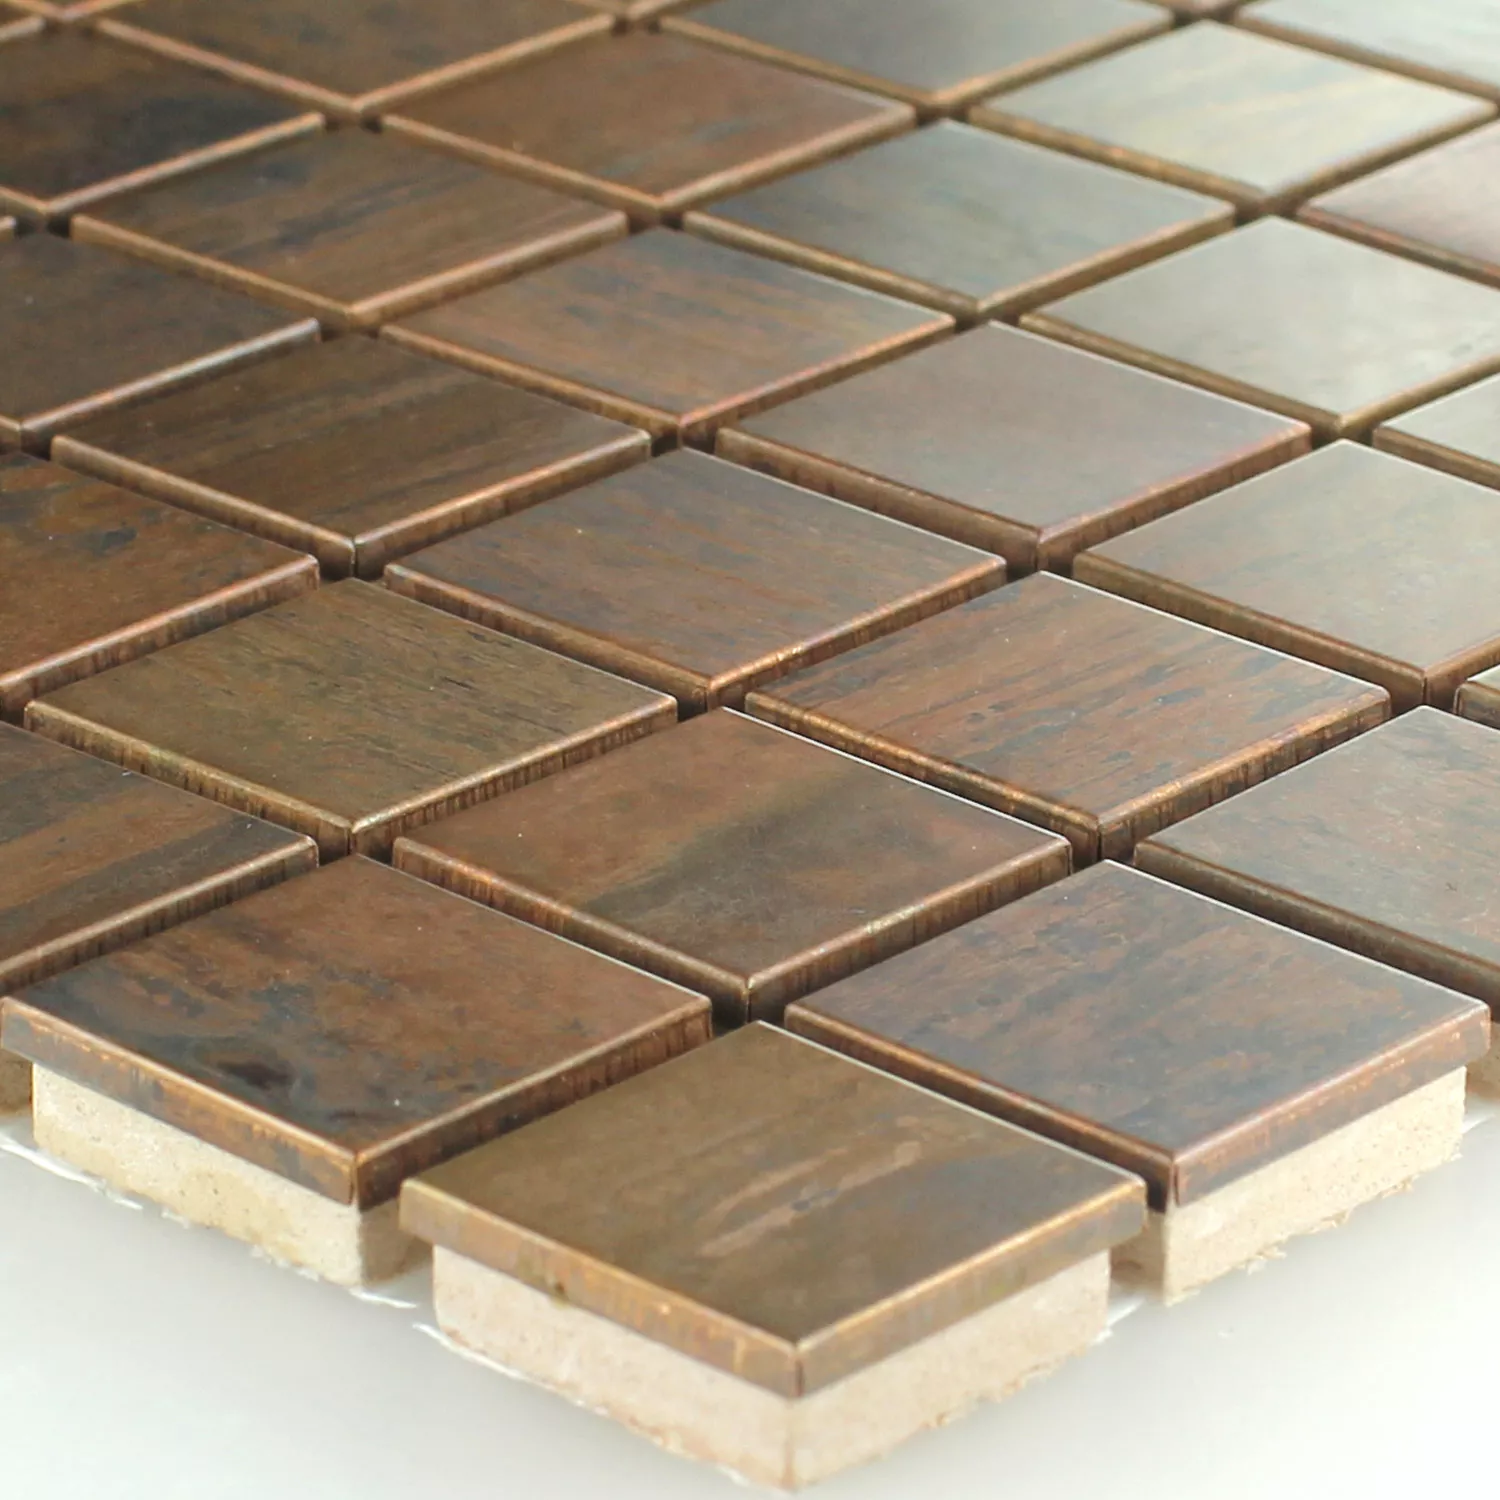 Sample Mosaic Tiles Copper Metal Design 